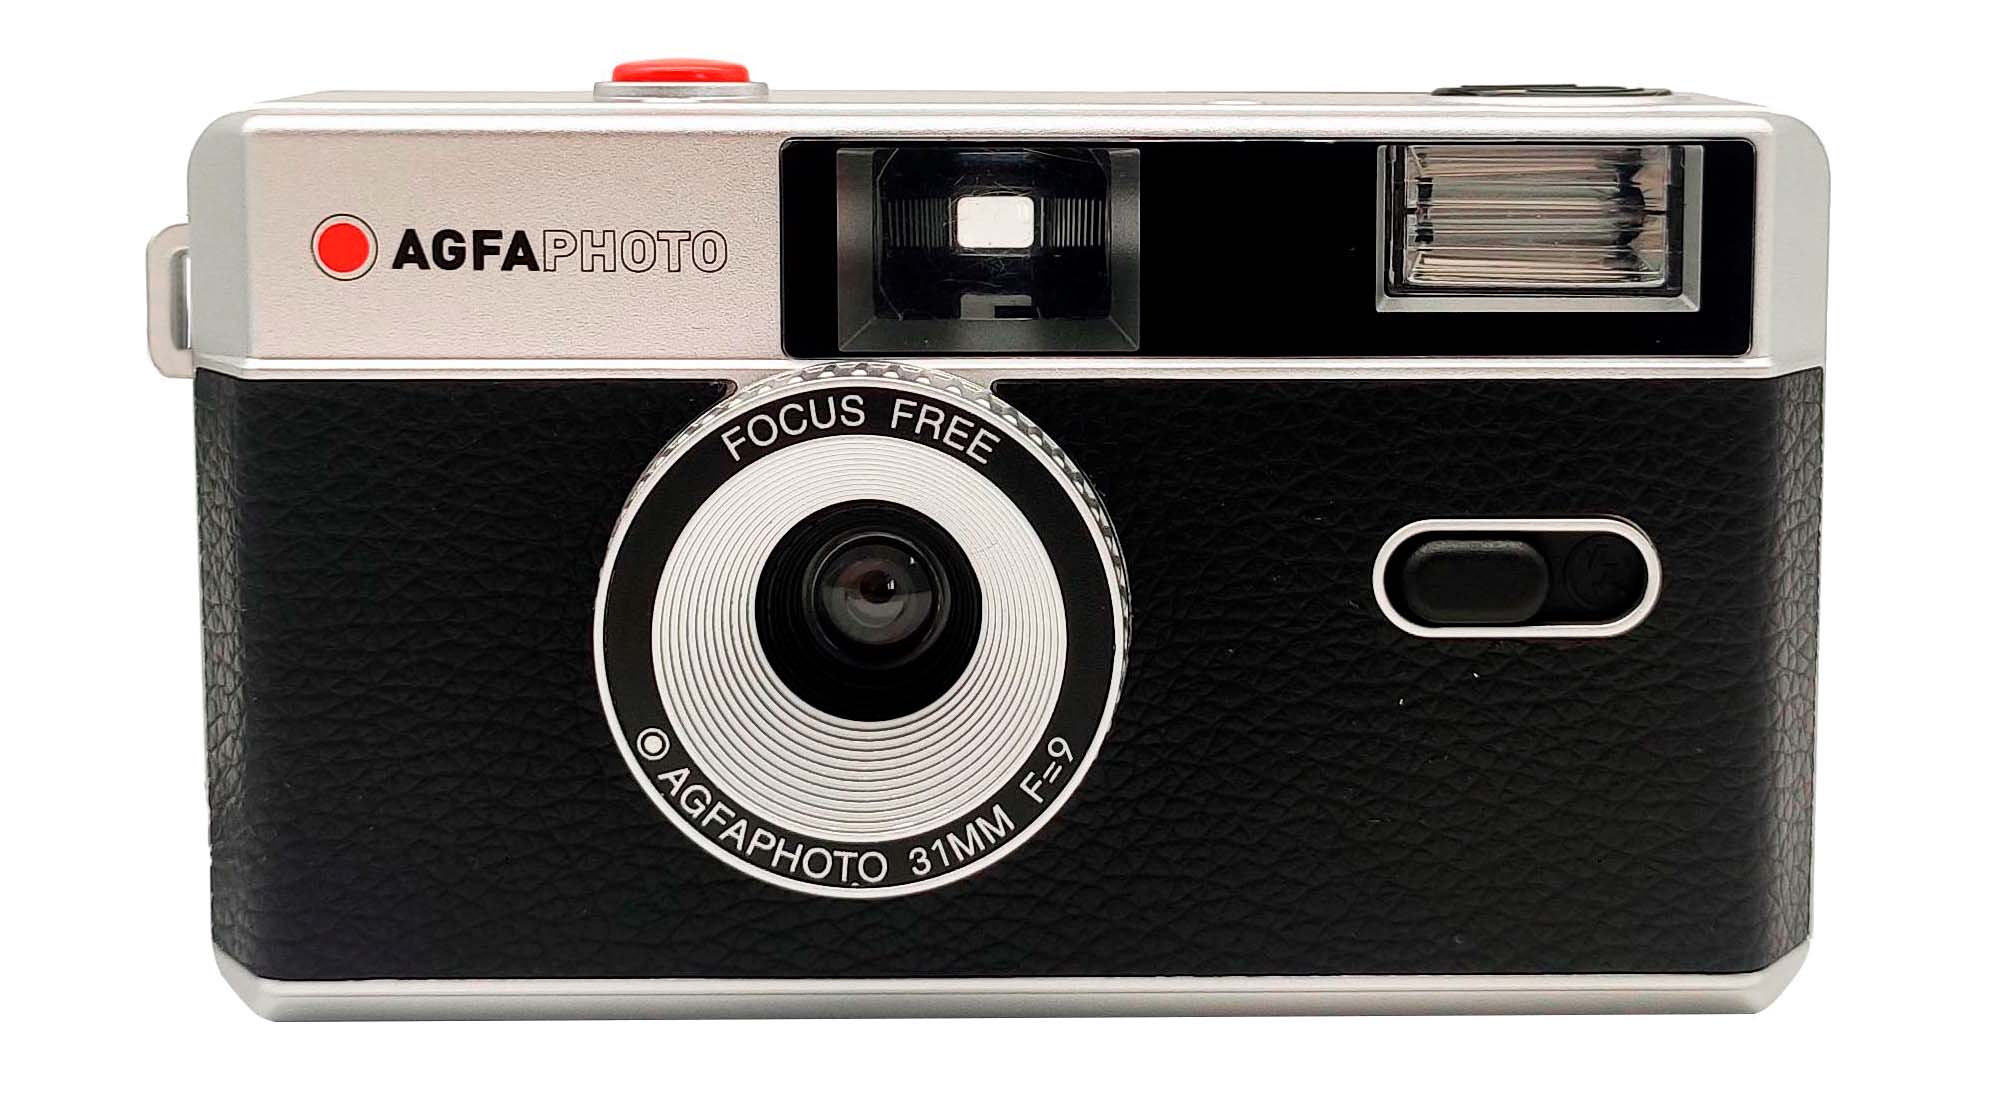 AgfaPhoto cámara analógica 35mm reutilizable Negra - kamaras.com